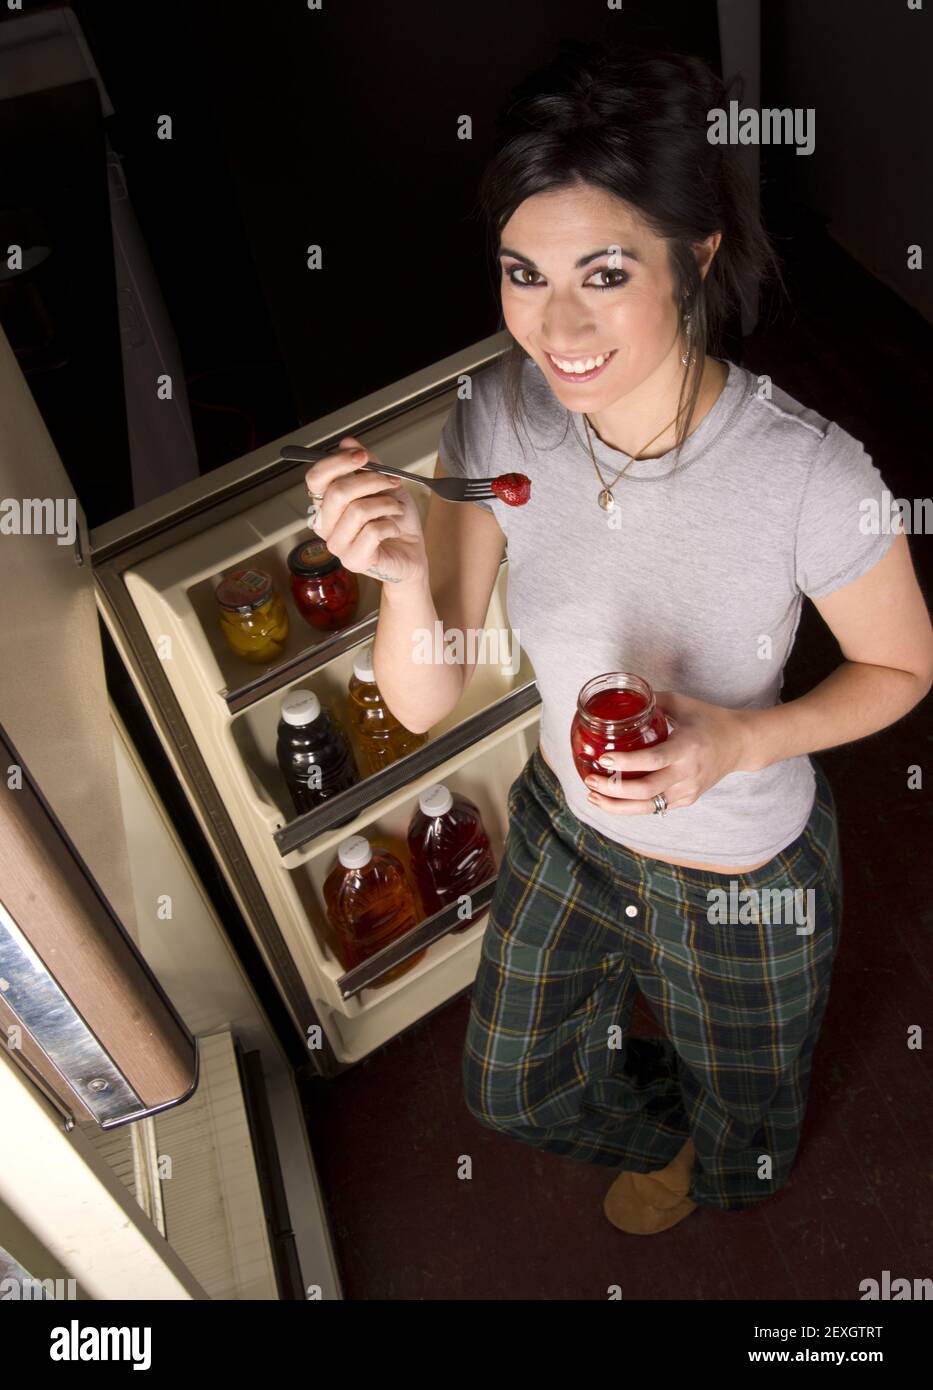 Kühlschrank-Besuch Stockfoto